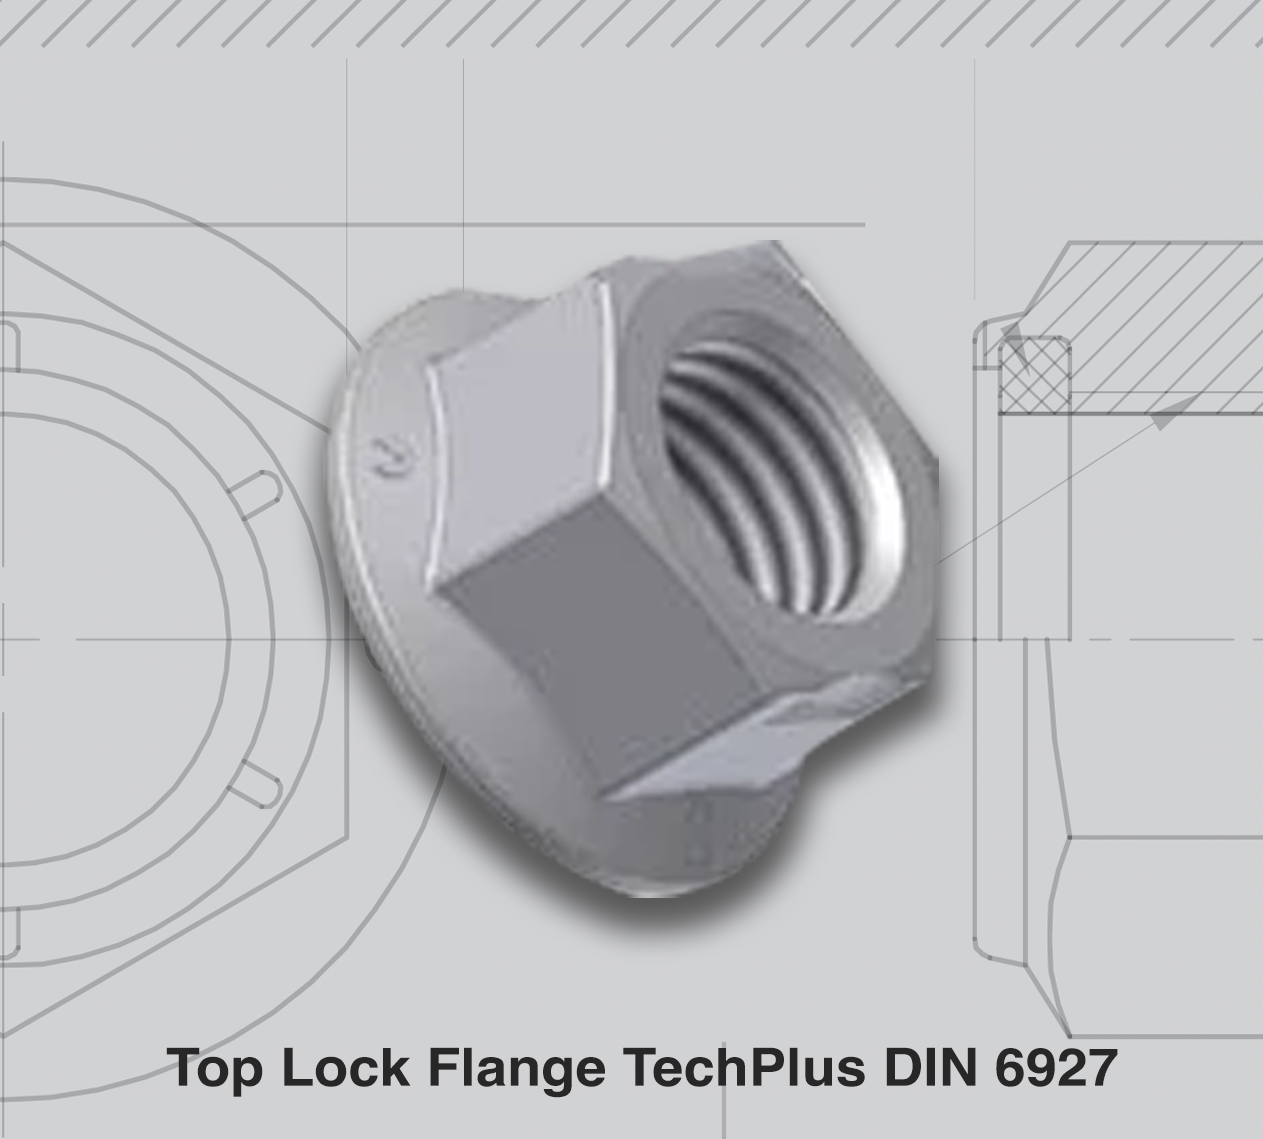 Top Lock Flange TechPlus DIN 6927